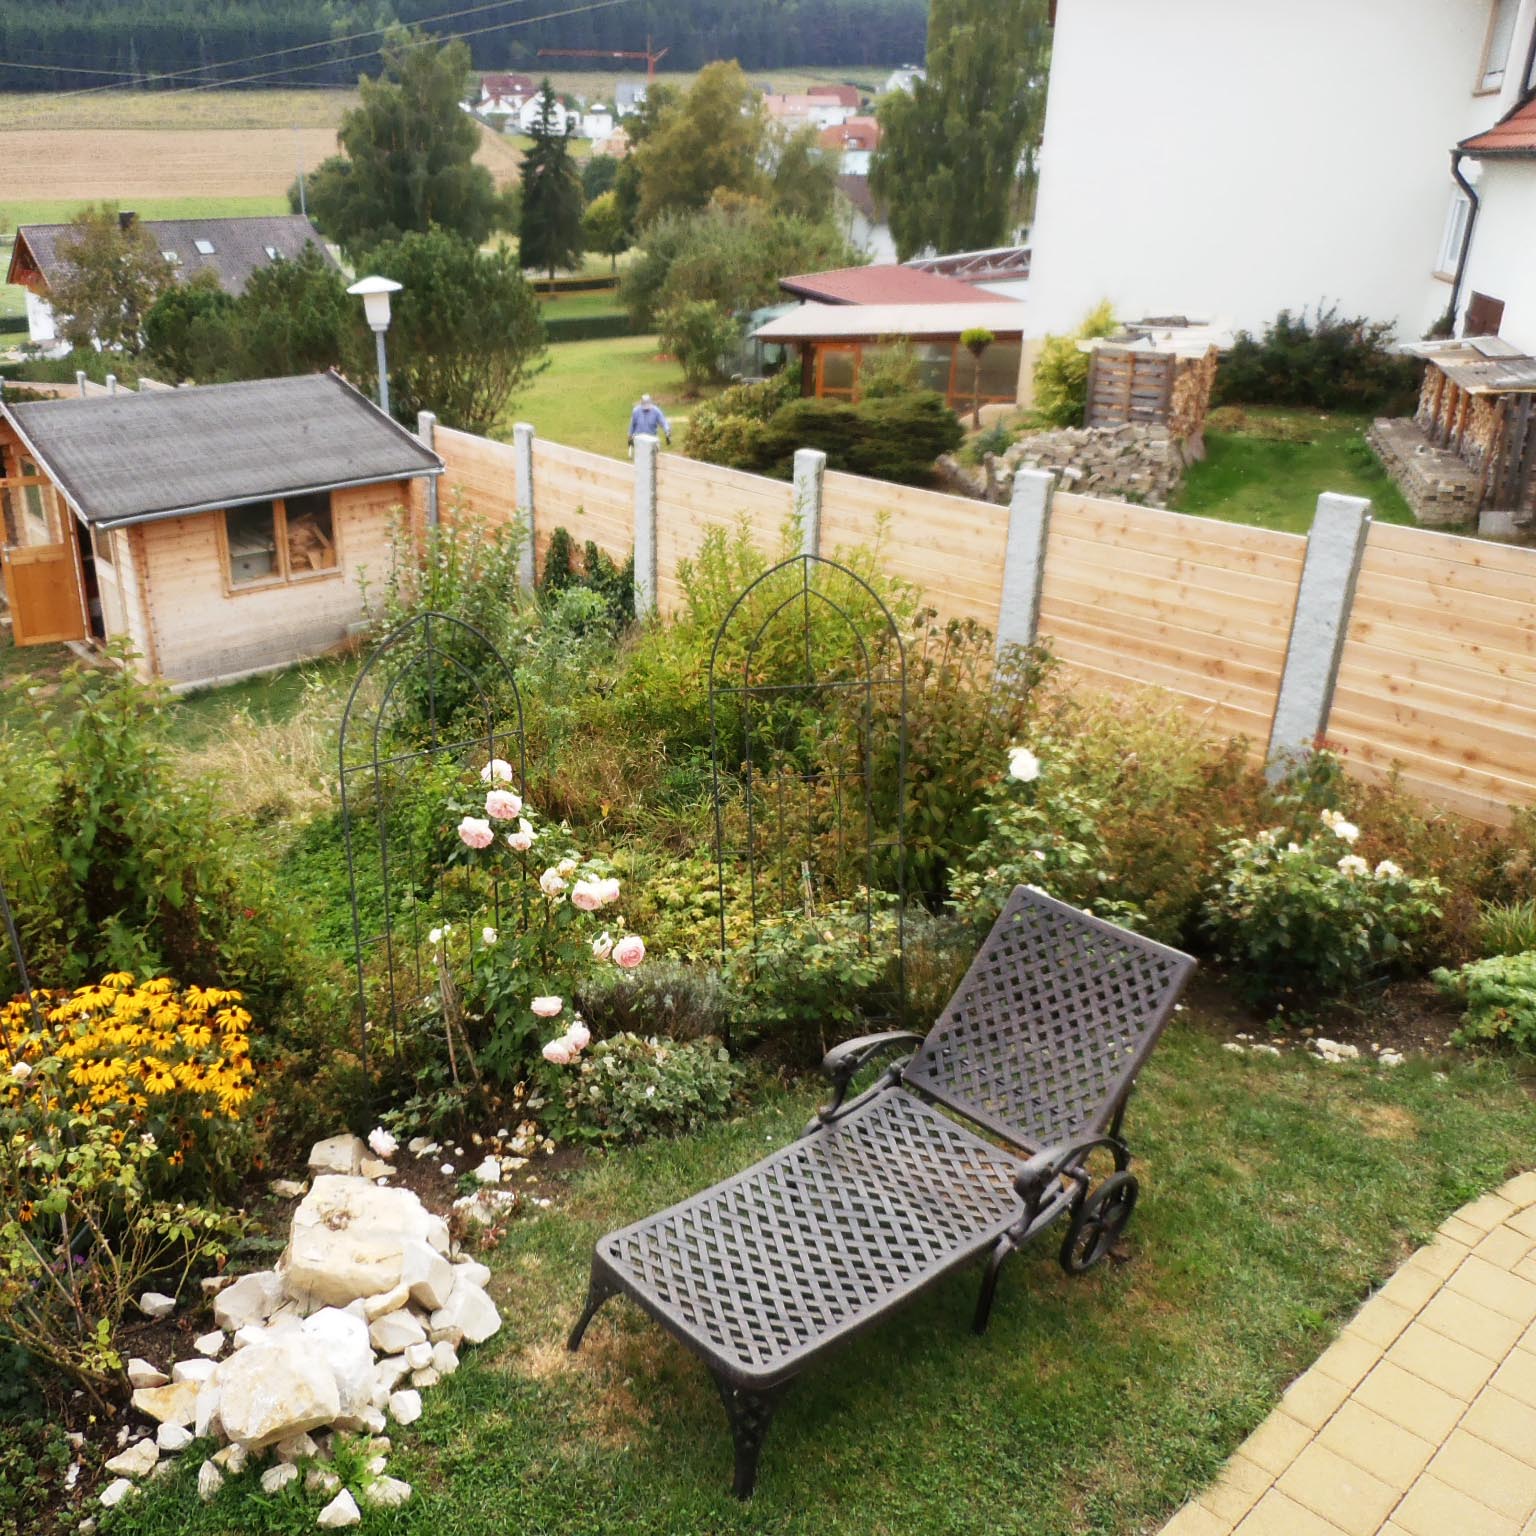 How do you choose a new sun lounger for your garden?